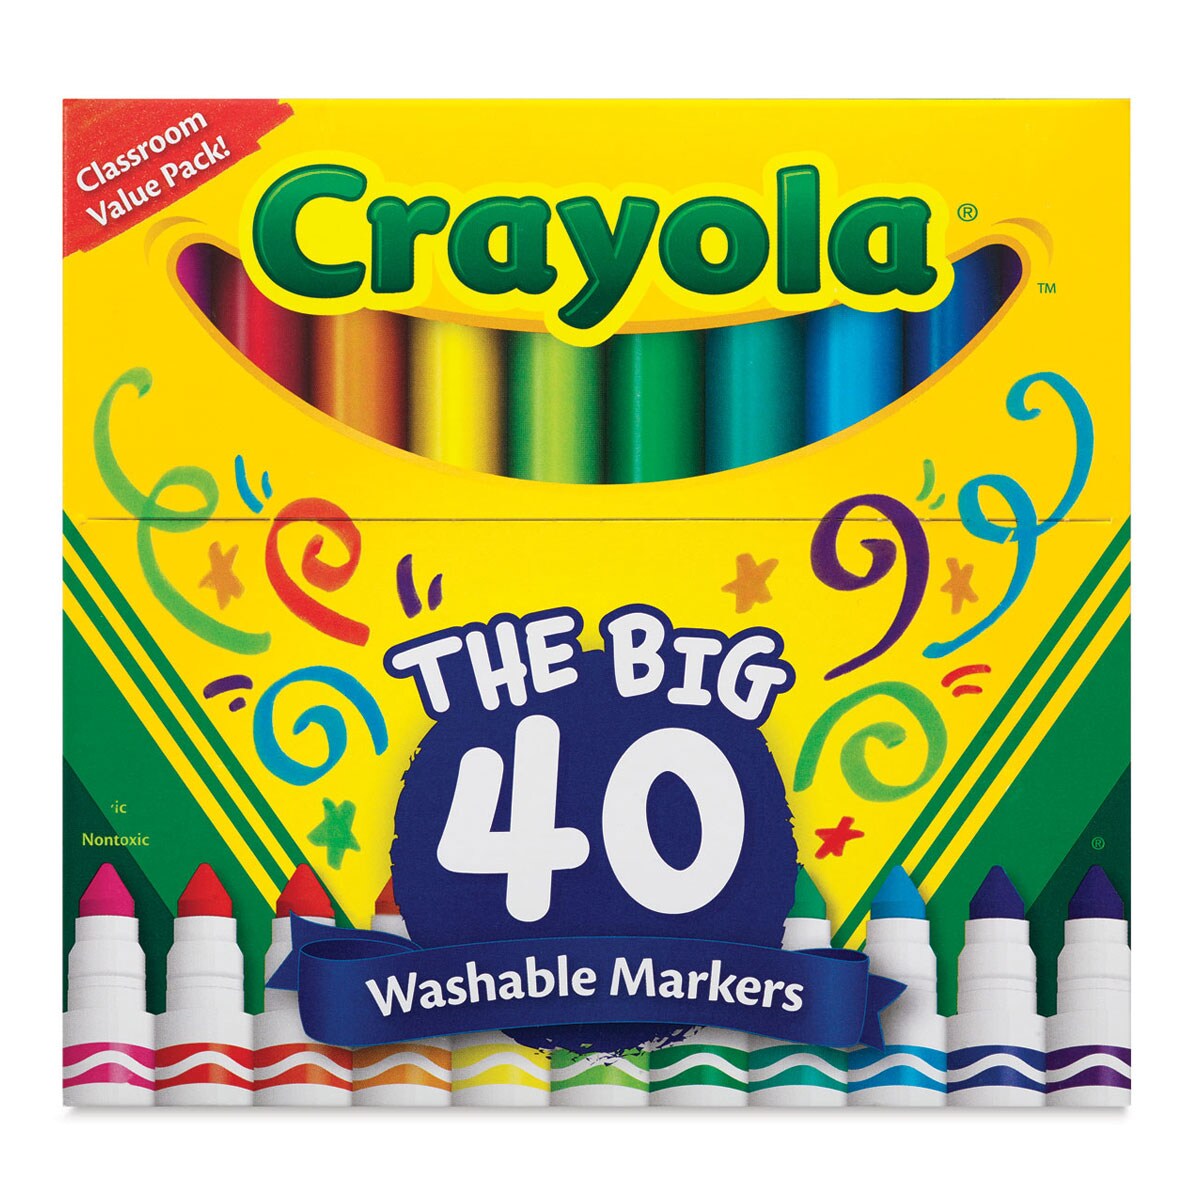 Crayola Ultra-Clean Washable Marker Set - Fine Tip, Set of 40